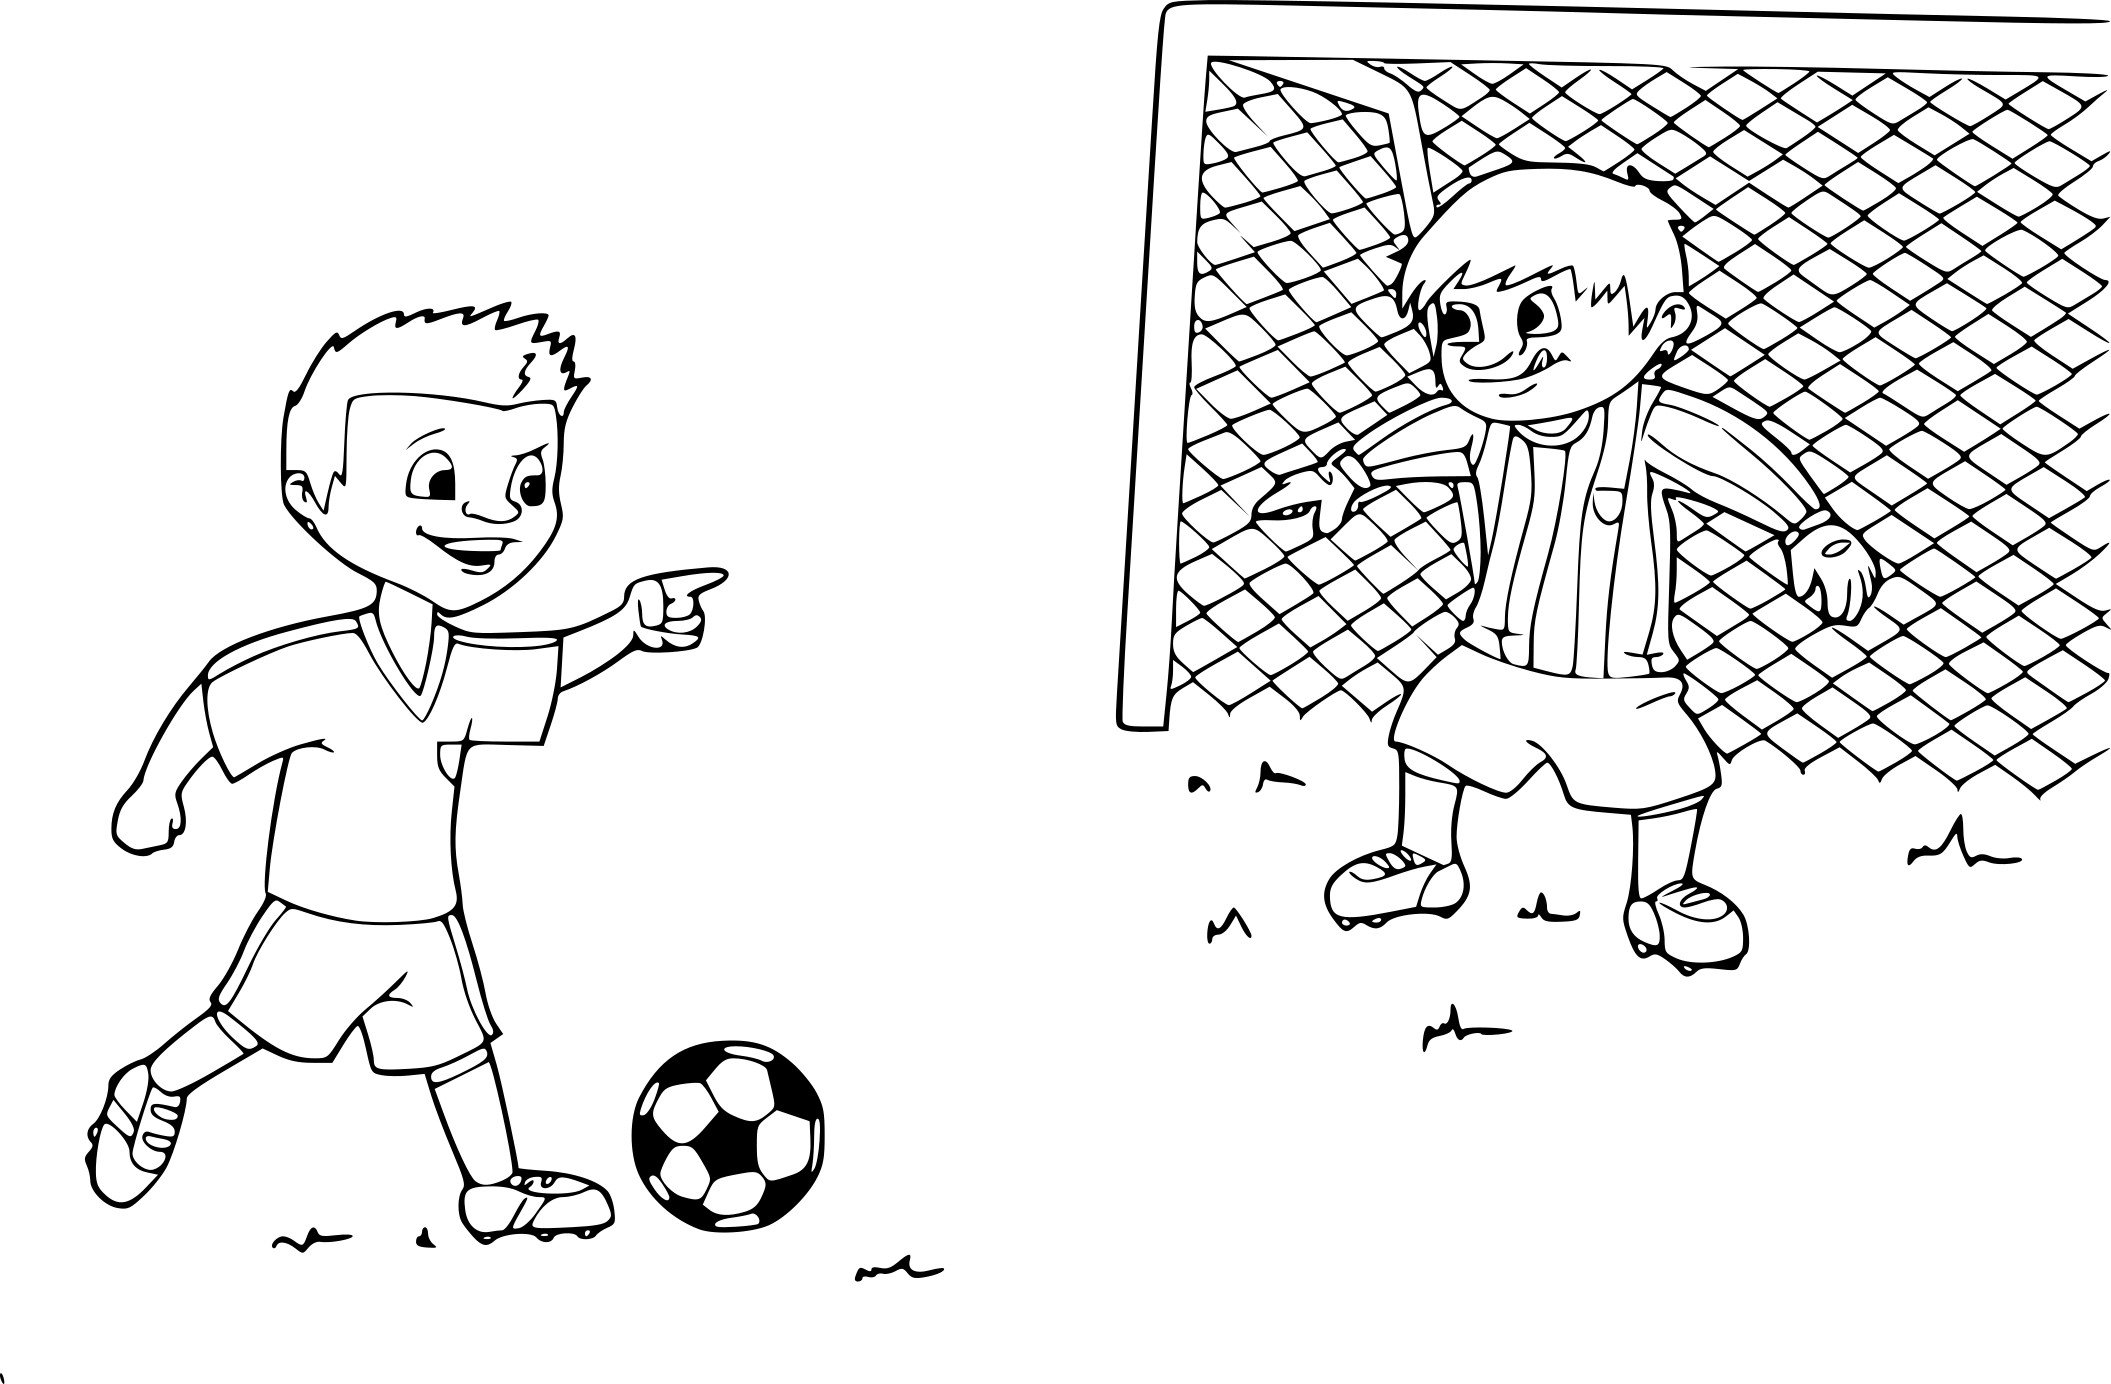 Рисунок детей играющих в футбол